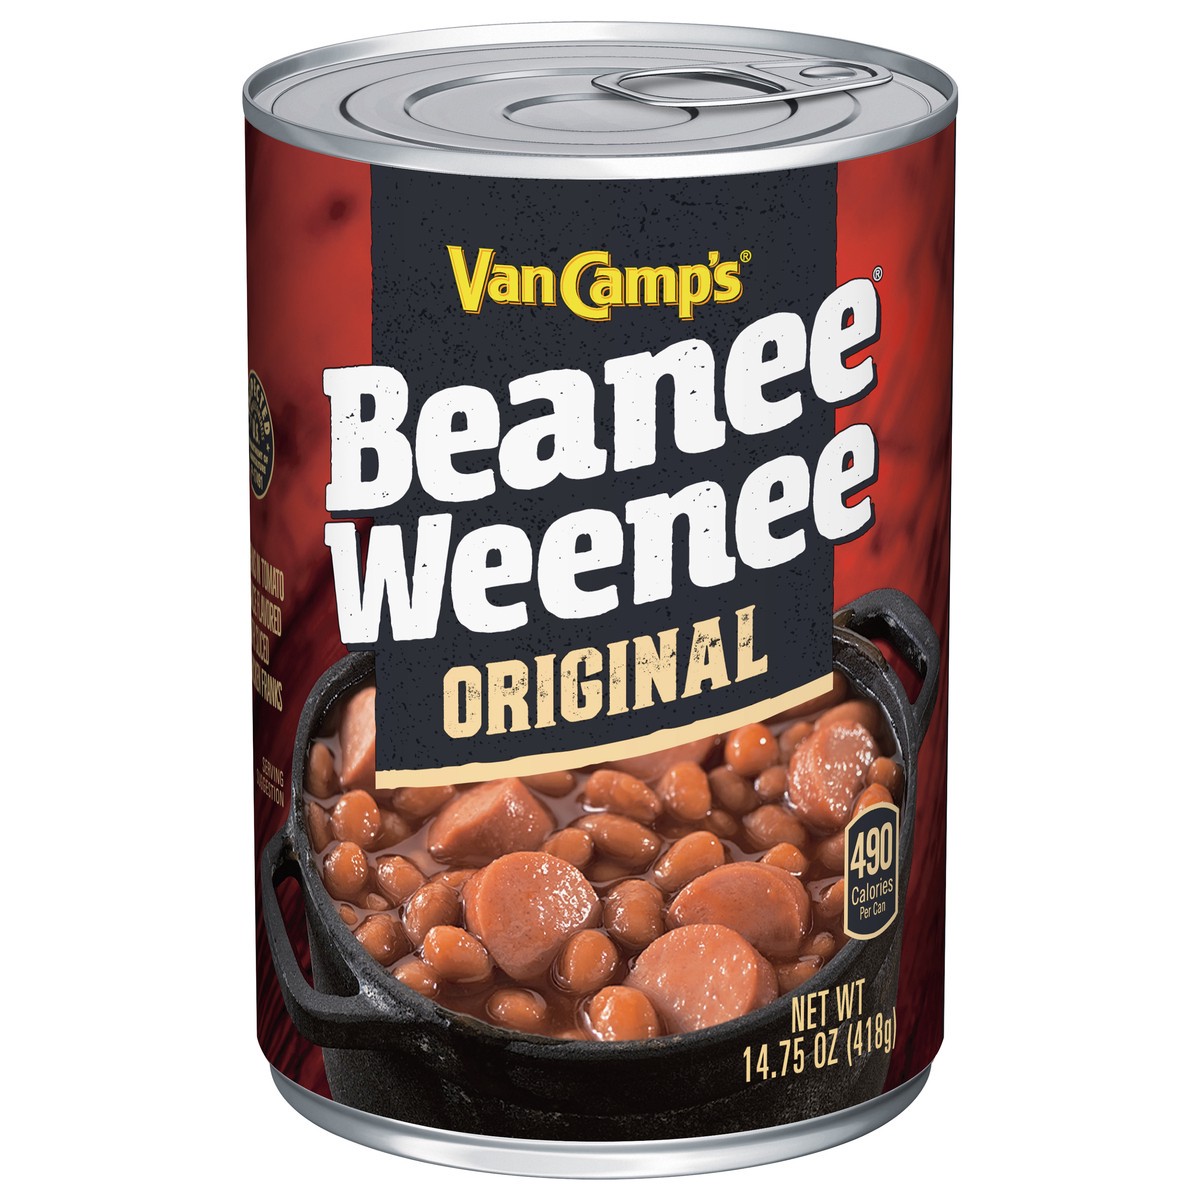 slide 1 of 3, Van Camp's Beanee Weenee Original Beans in Tomato 14.75 oz, 14.75 oz